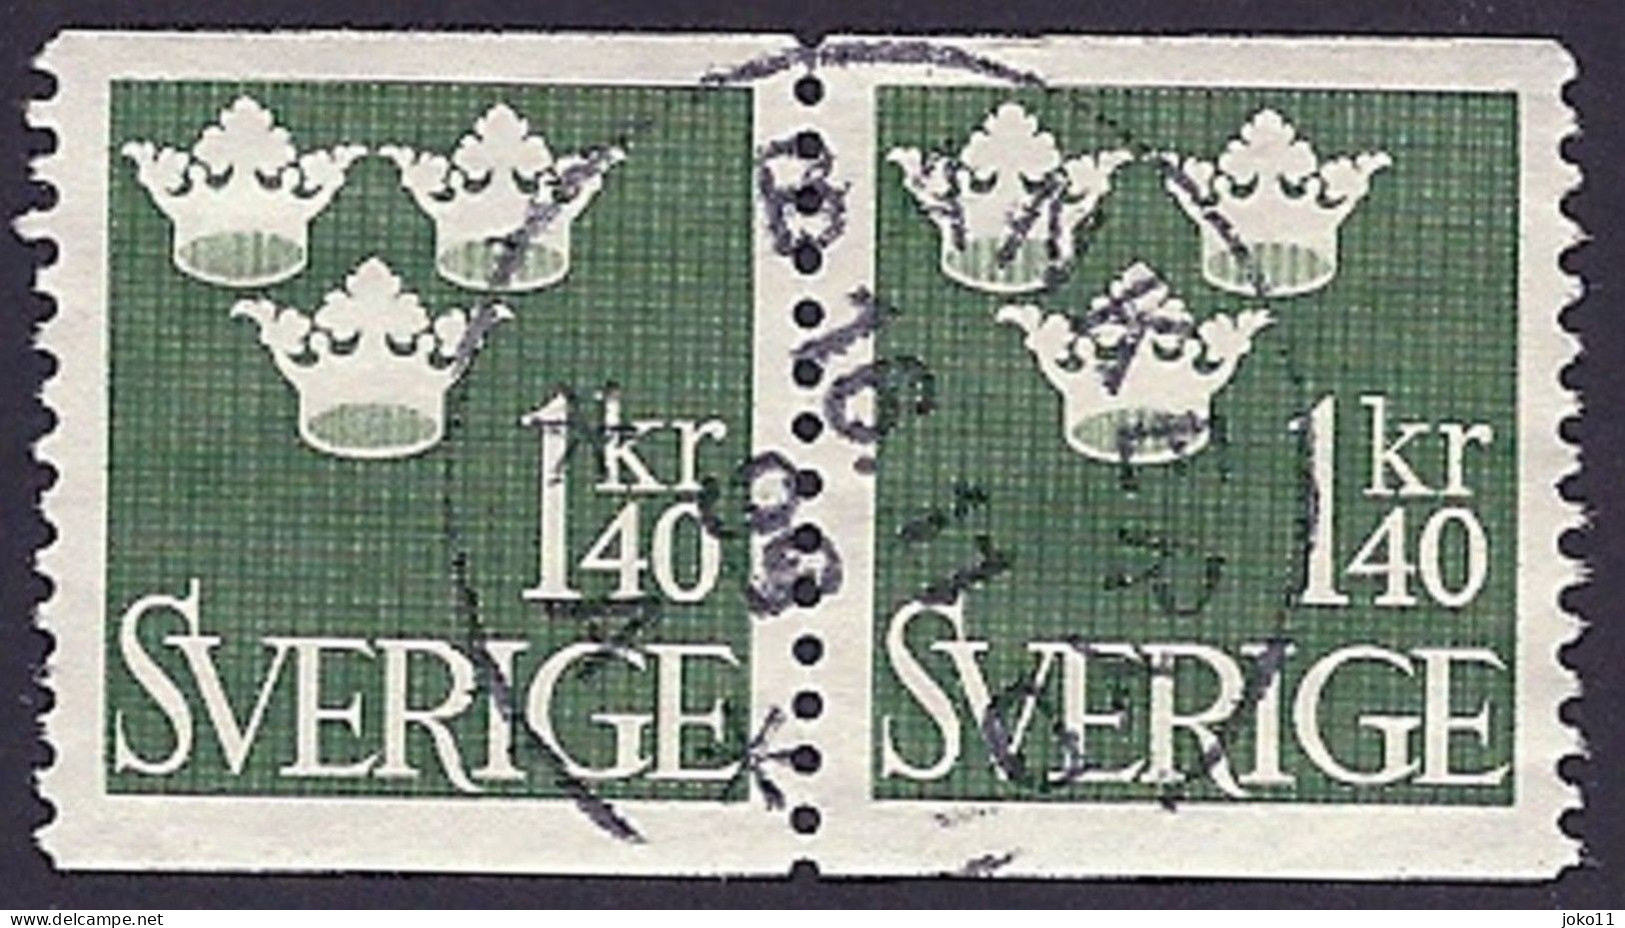 Schweden, 1948, Michel-Nr. 338, Gestempelt - Gebraucht